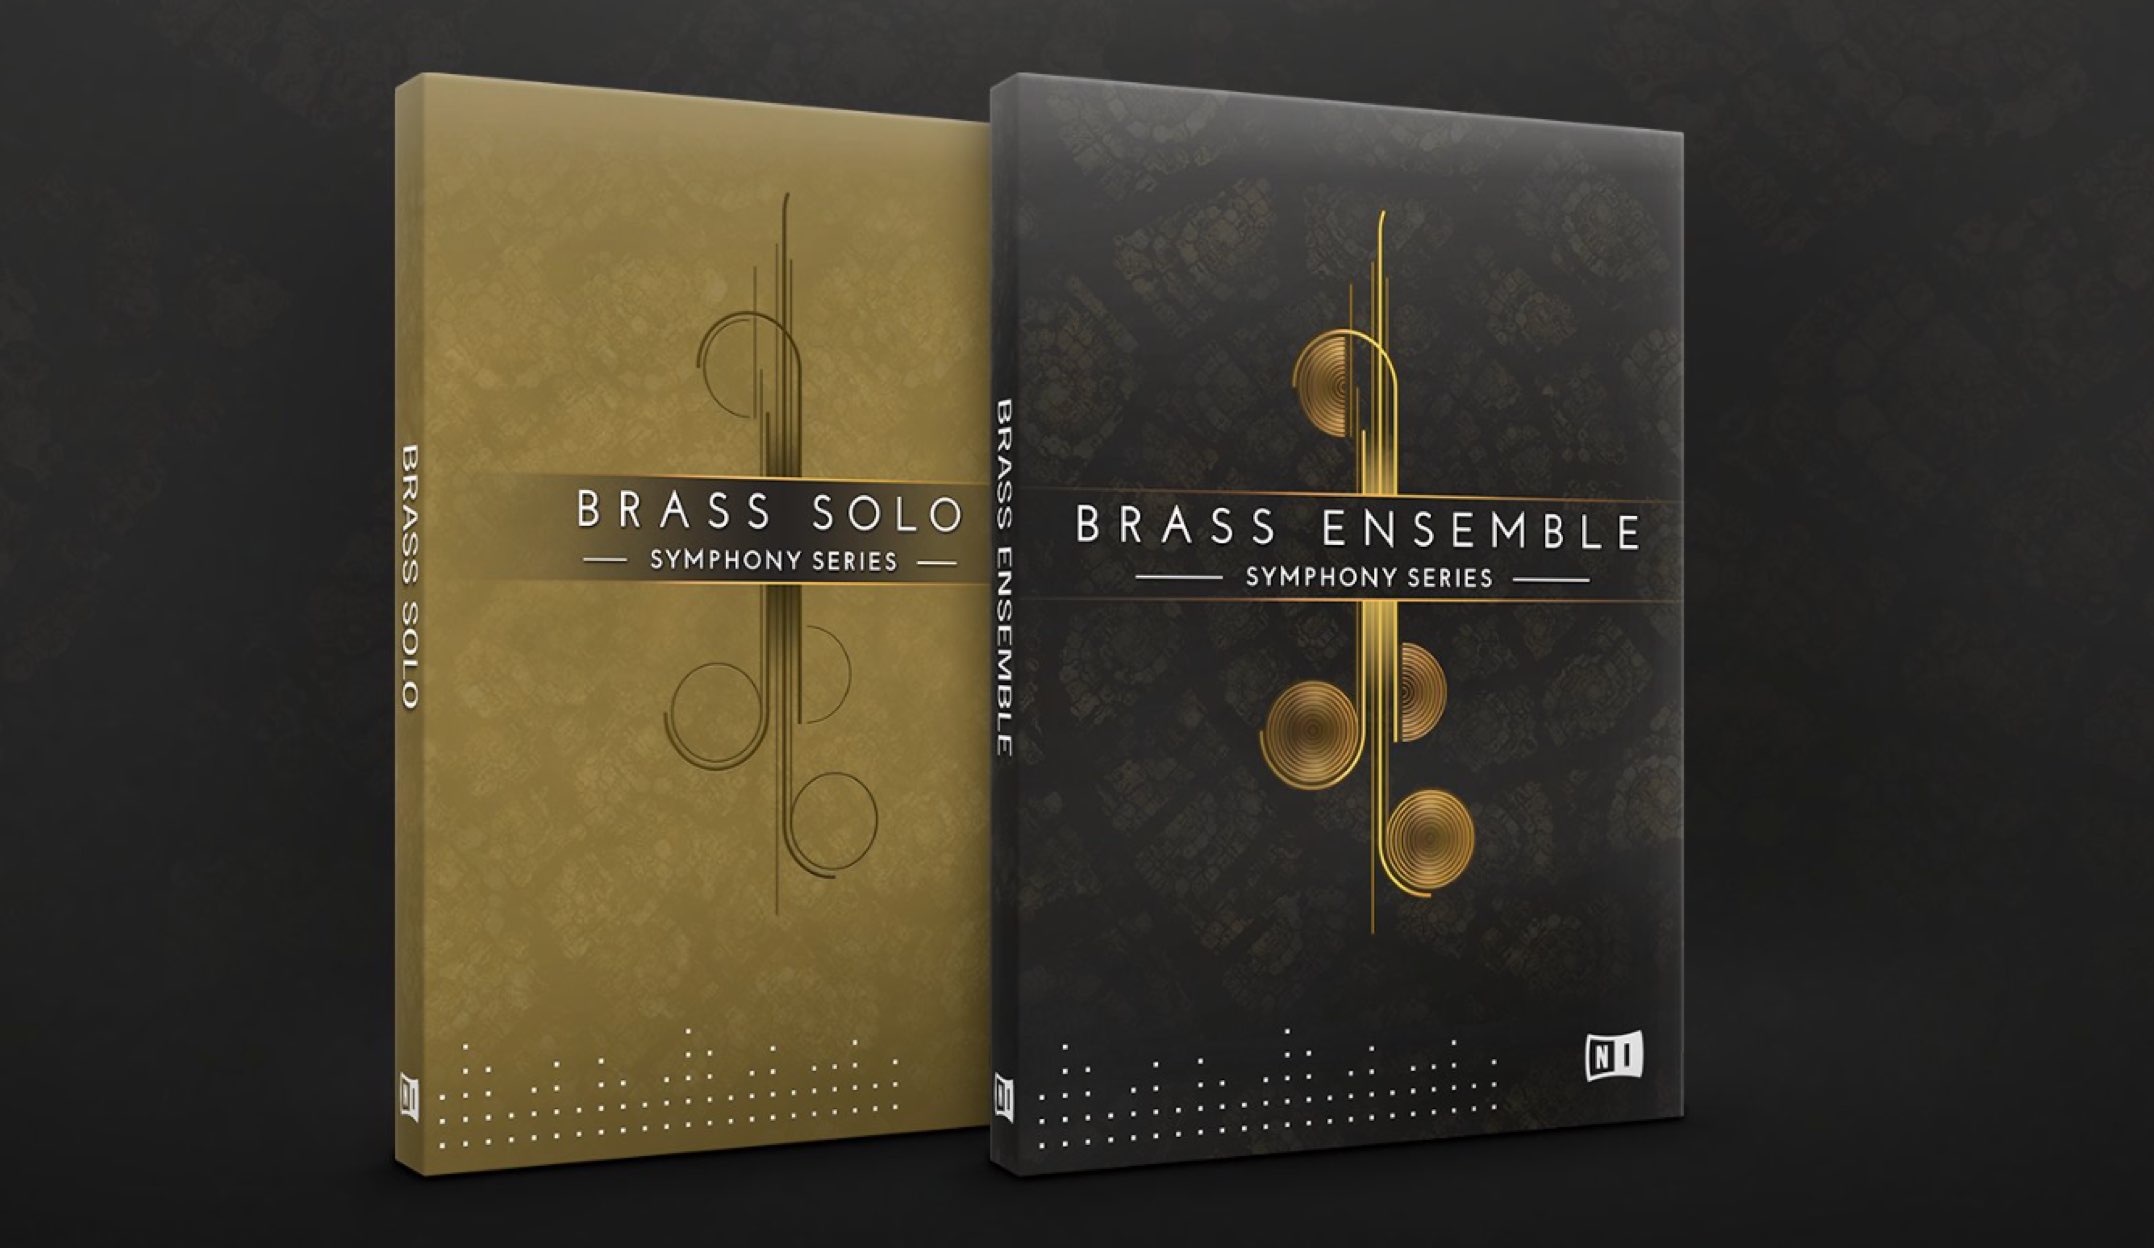 Symphony Series - Brass